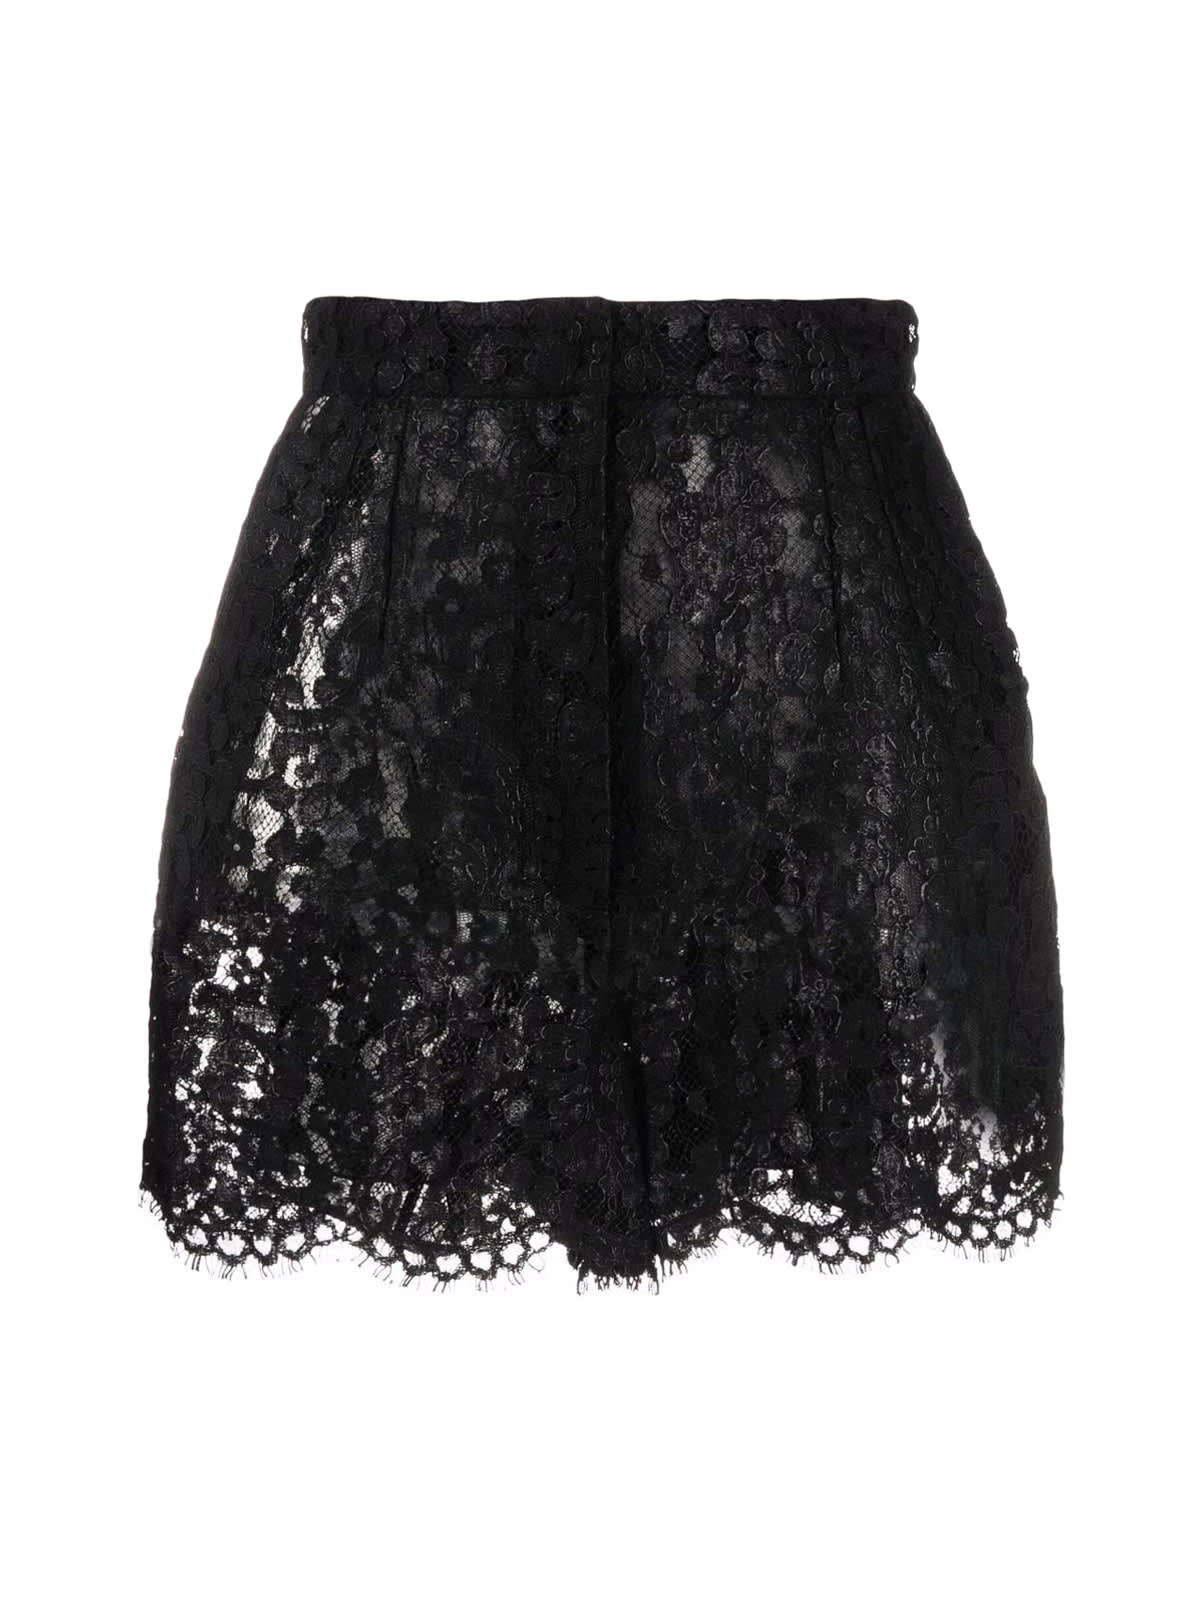 Dolce & Gabbana High-wasted Lace Shorts